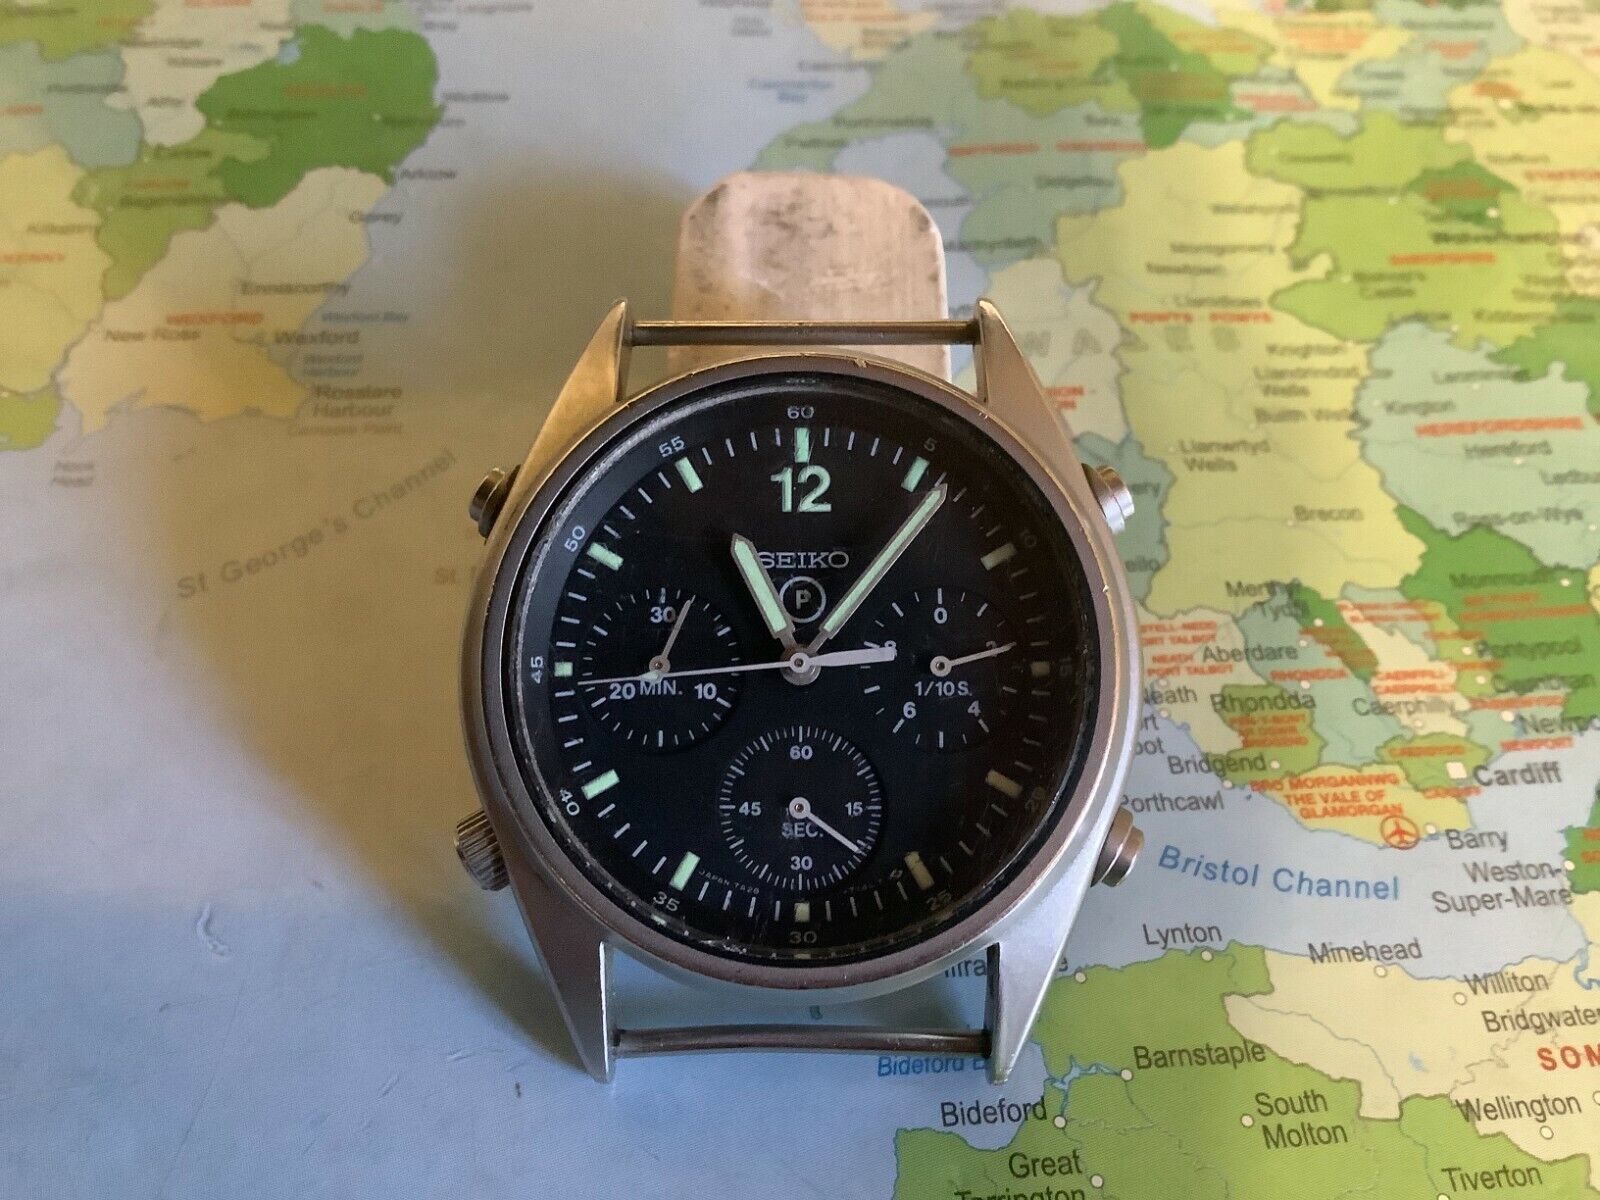 Genuine British Airforce  Seiko Military Pilots Chronograph  Watch  